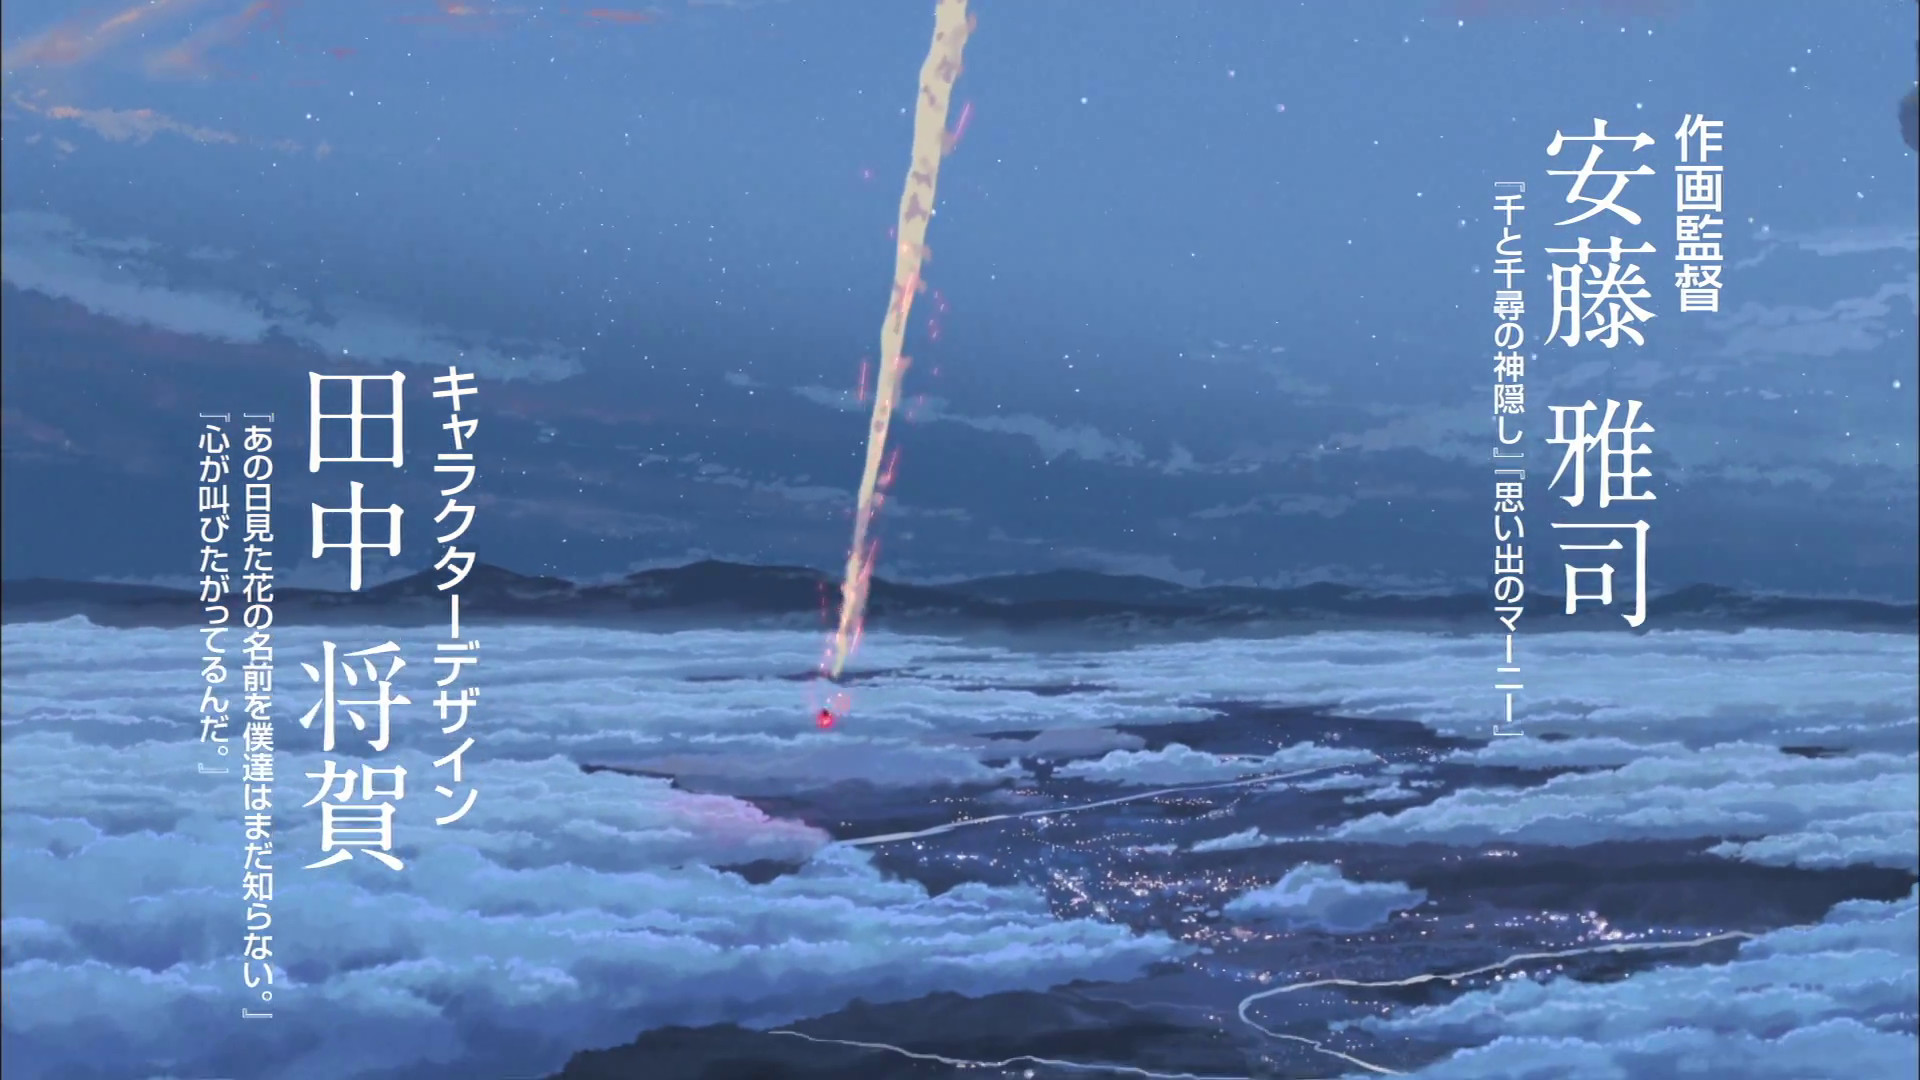 1920x1080 Makoto SHINKAI - "Kimi no na wa (your name)" screencaps